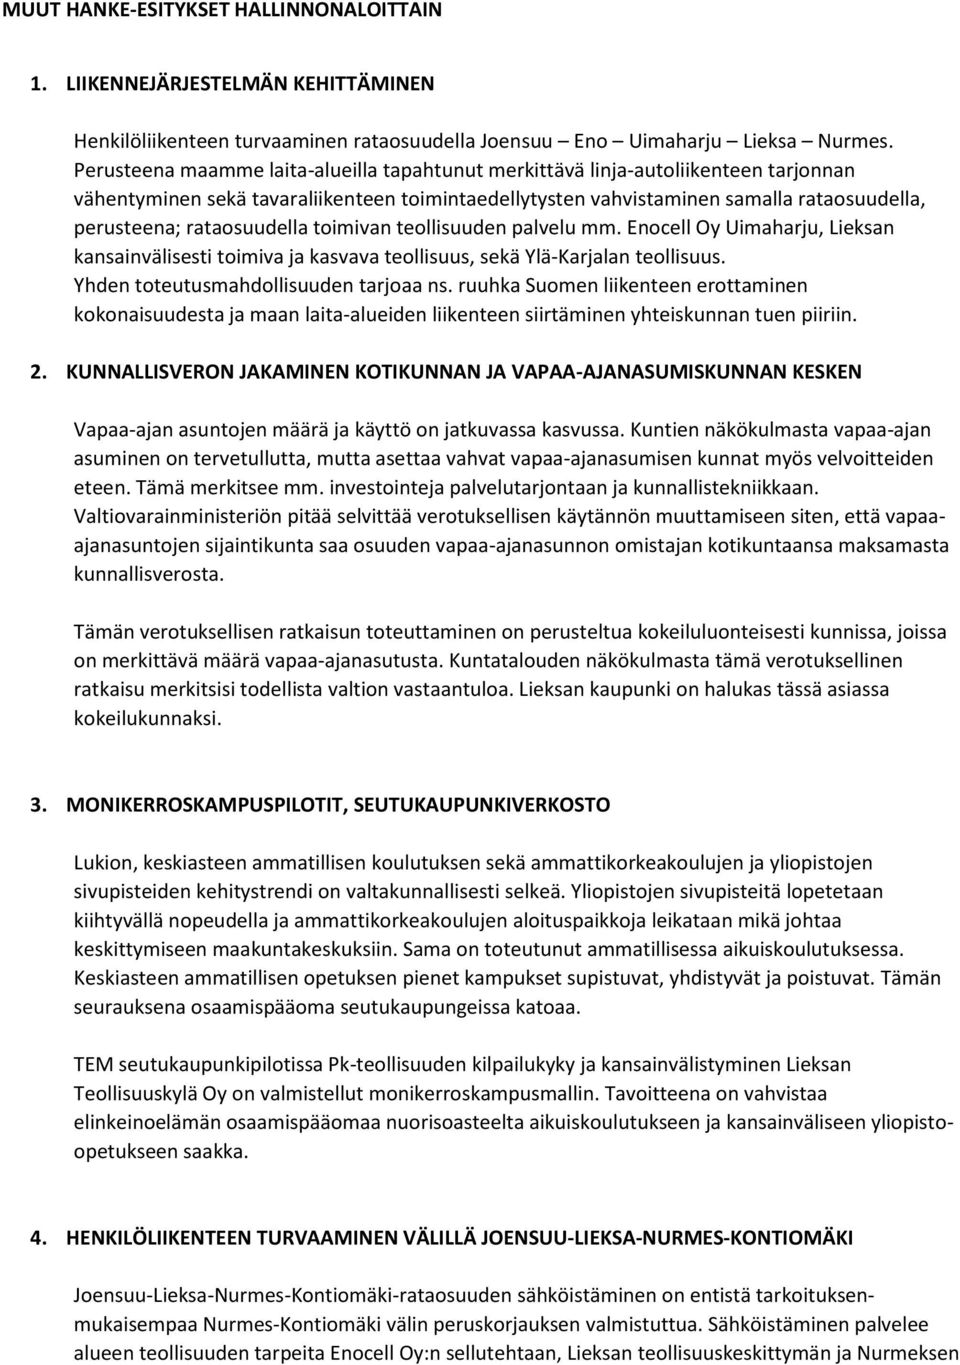 rataosuudella toimivan teollisuuden palvelu mm. Enocell Oy Uimaharju, Lieksan kansainvälisesti toimiva ja kasvava teollisuus, sekä Ylä-Karjalan teollisuus. Yhden toteutusmahdollisuuden tarjoaa ns.